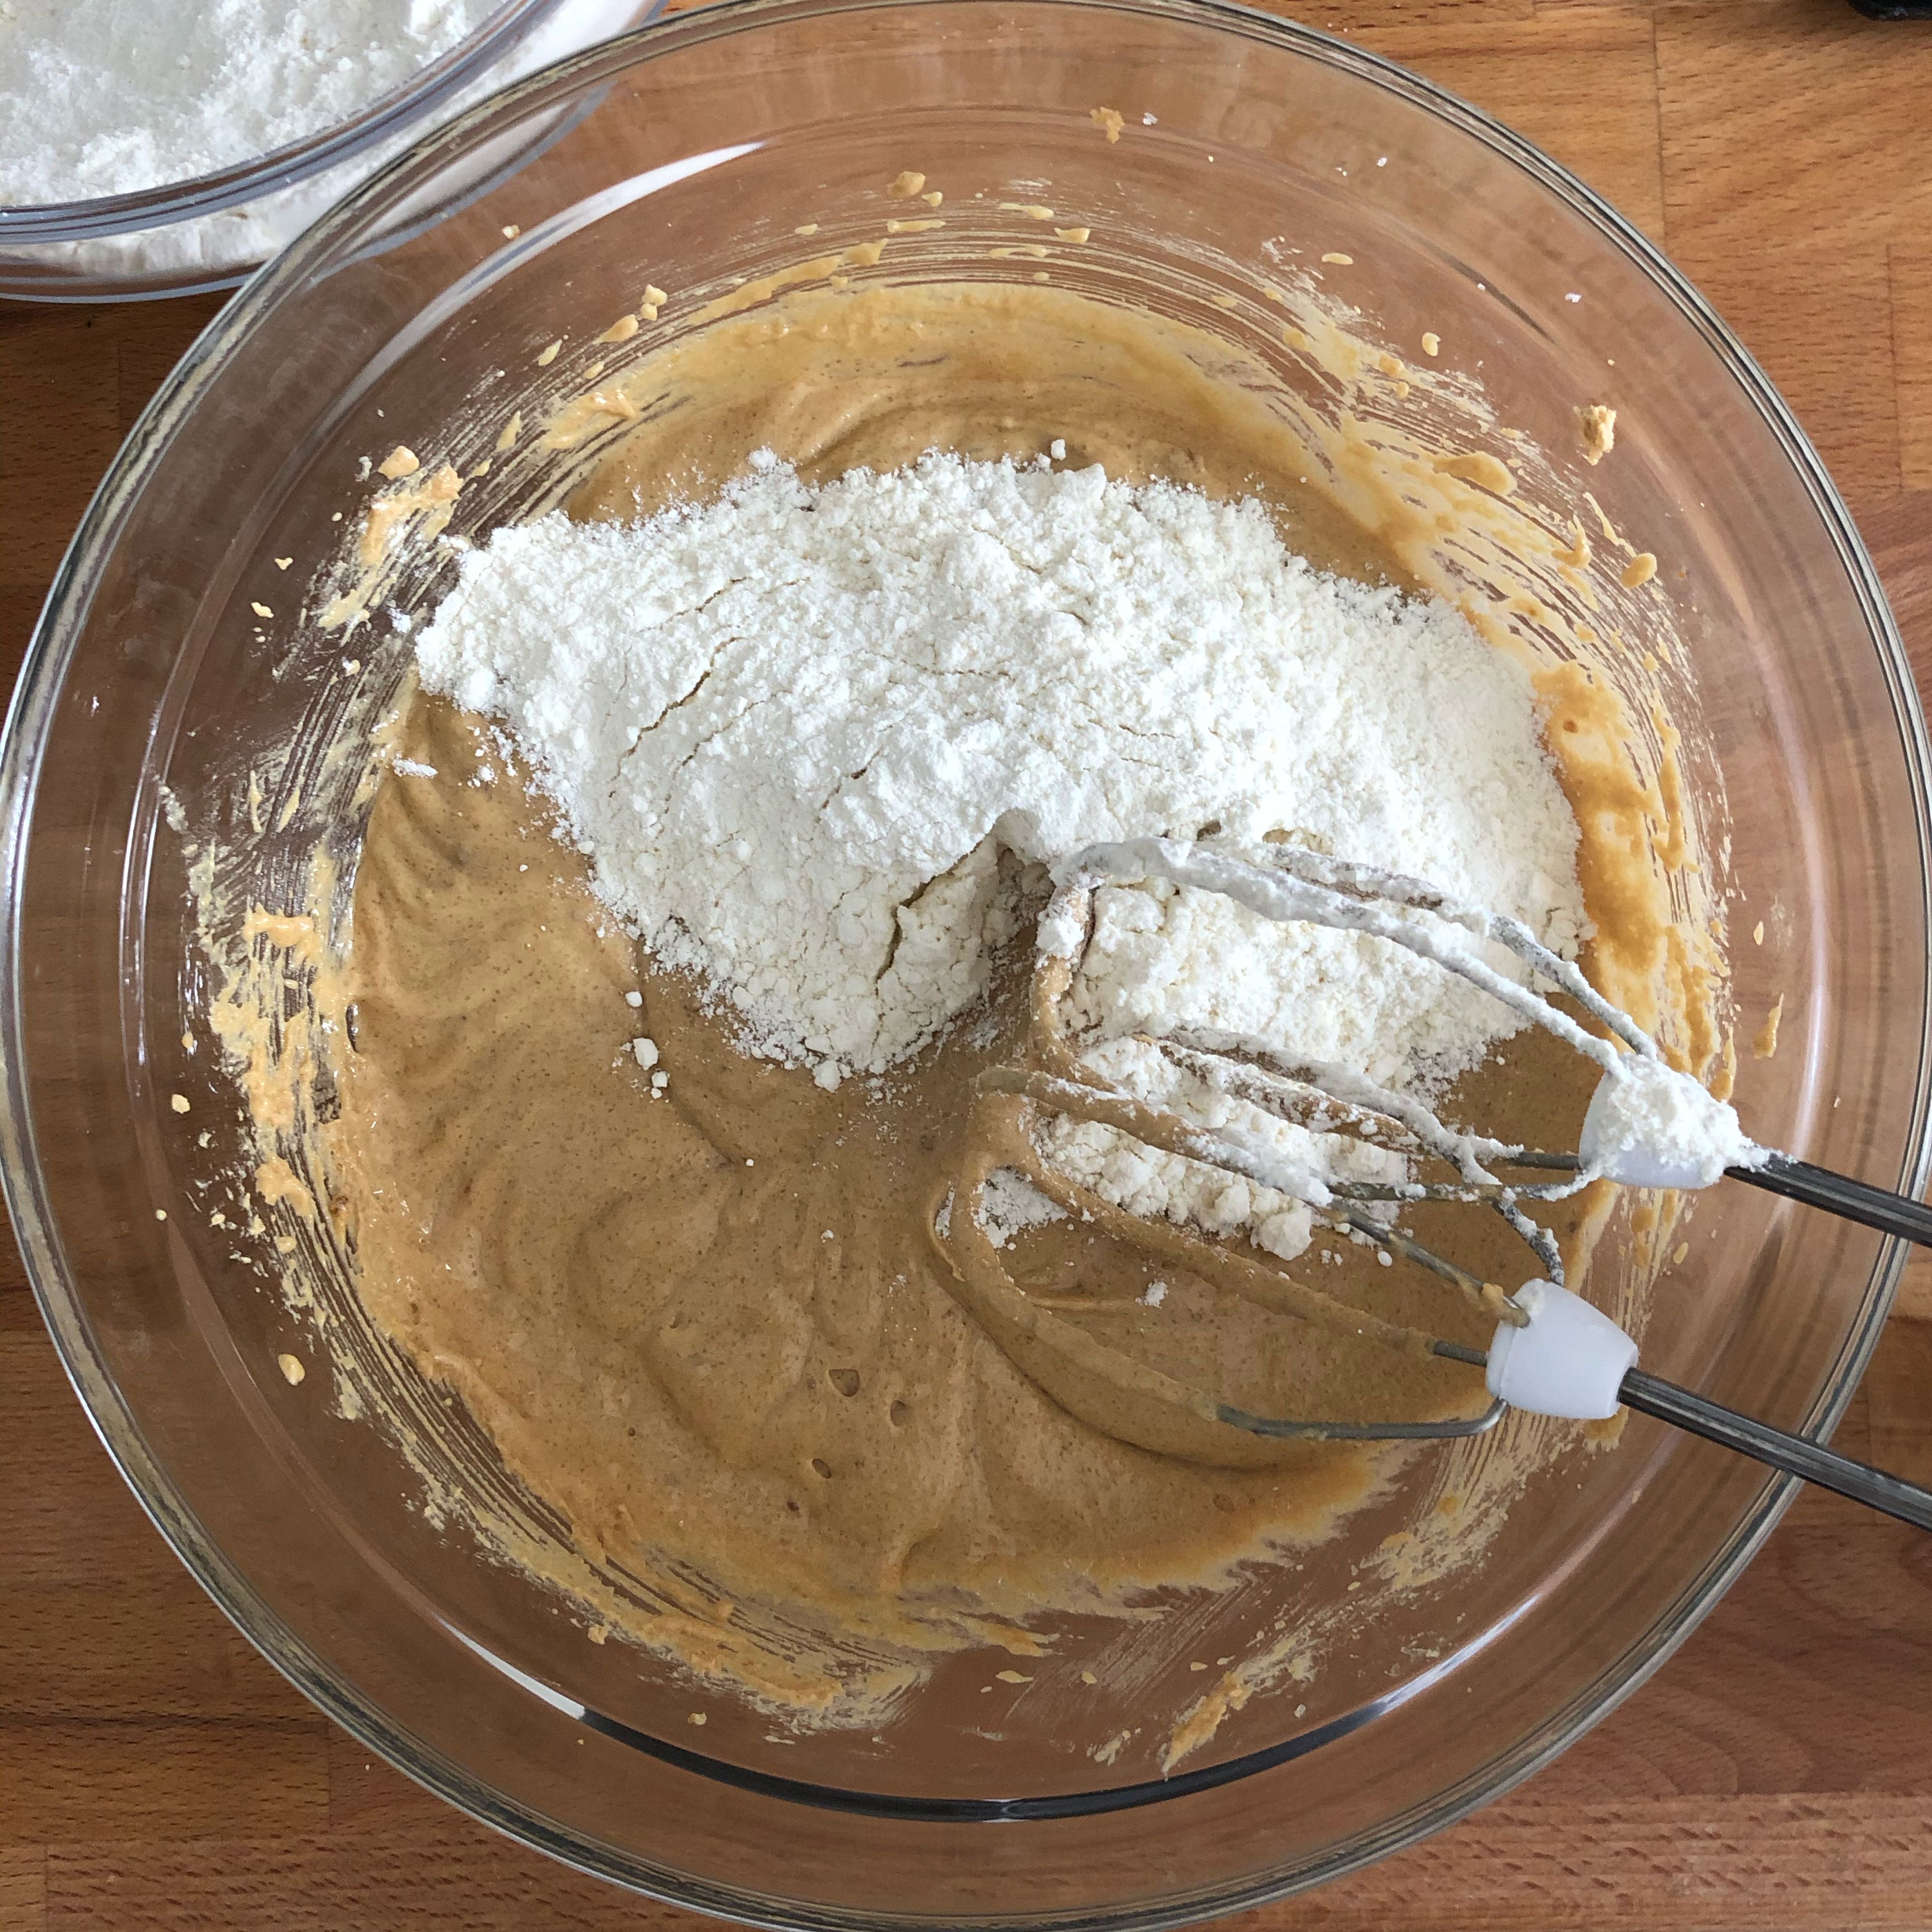 Miso und Tahini zur Butter-Zucker-Mischung hinzufügen und mischen, bis sich alles gut verbunden hat. Die Ränder der Schüssel abkratzen und erneut mixen. Ei und Vanille zugeben und einrühren, dann einen Teil der Mehlmischung hinzufügen und auf niedriger Geschwindigkeit unterrühren. Restliches Mehl hinzugeben und weitermixen, bis sich alles zu einer Masse verbunden hat.